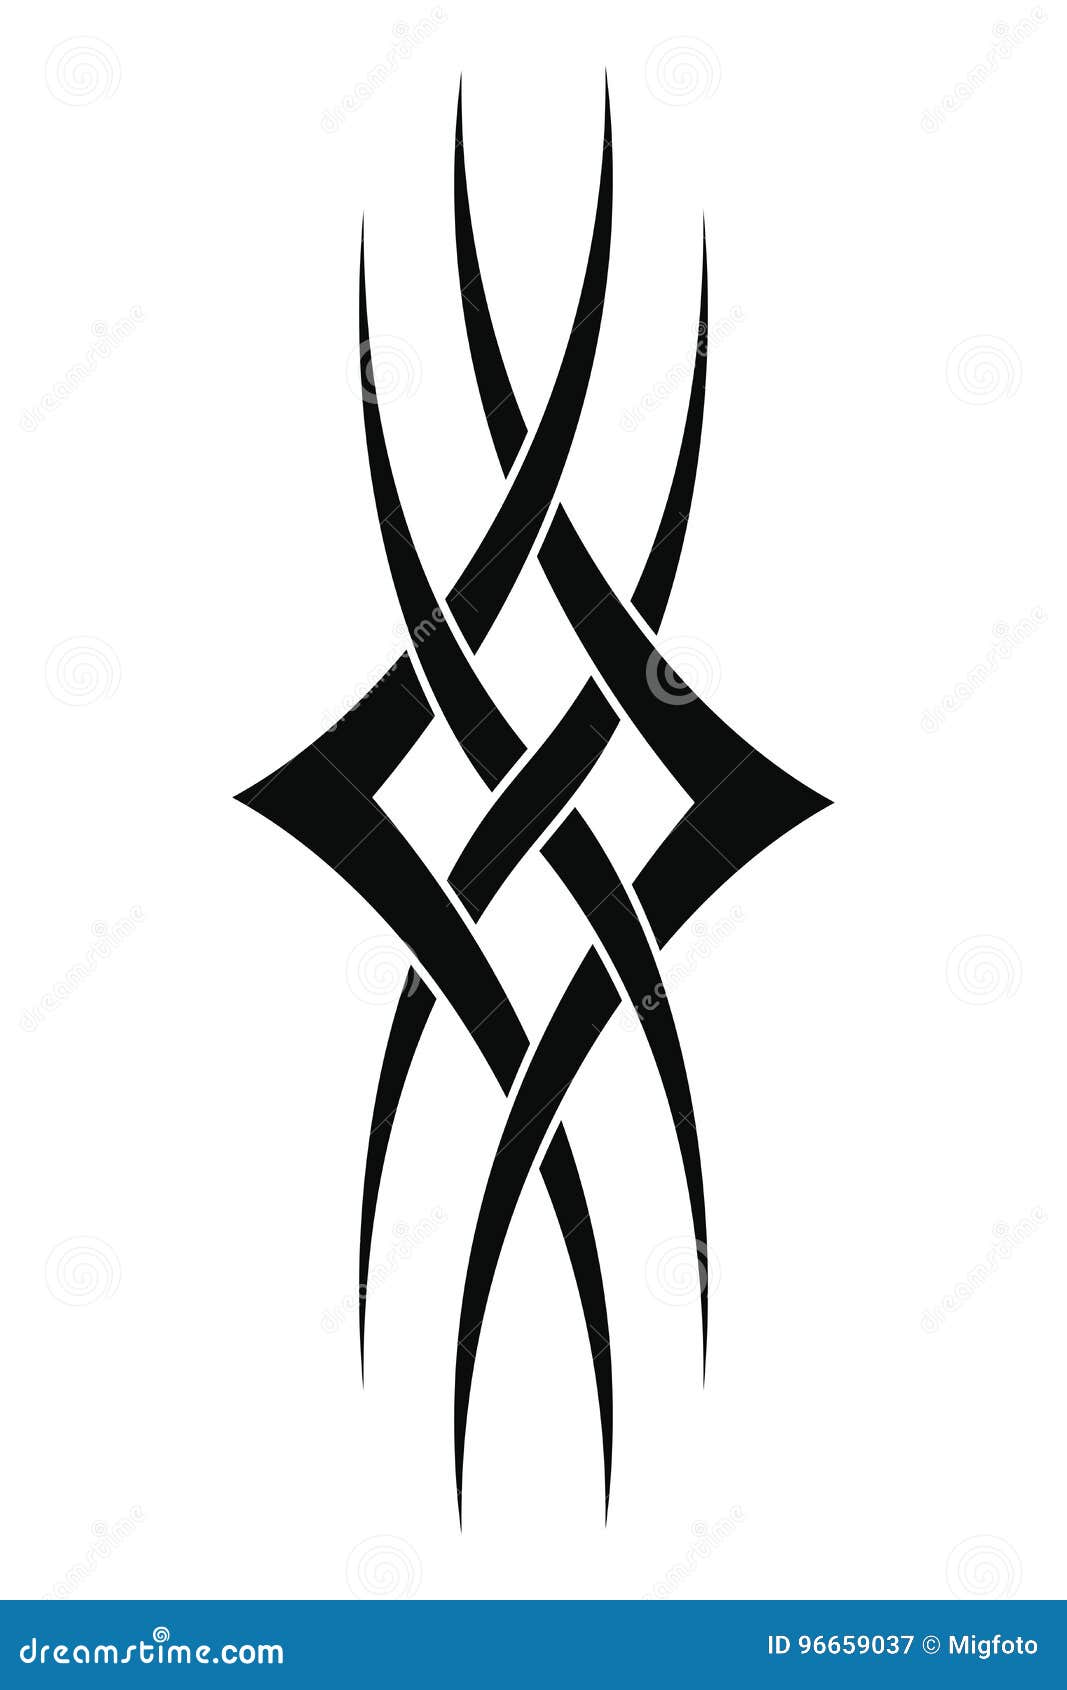 tribal tattoo designs to draw